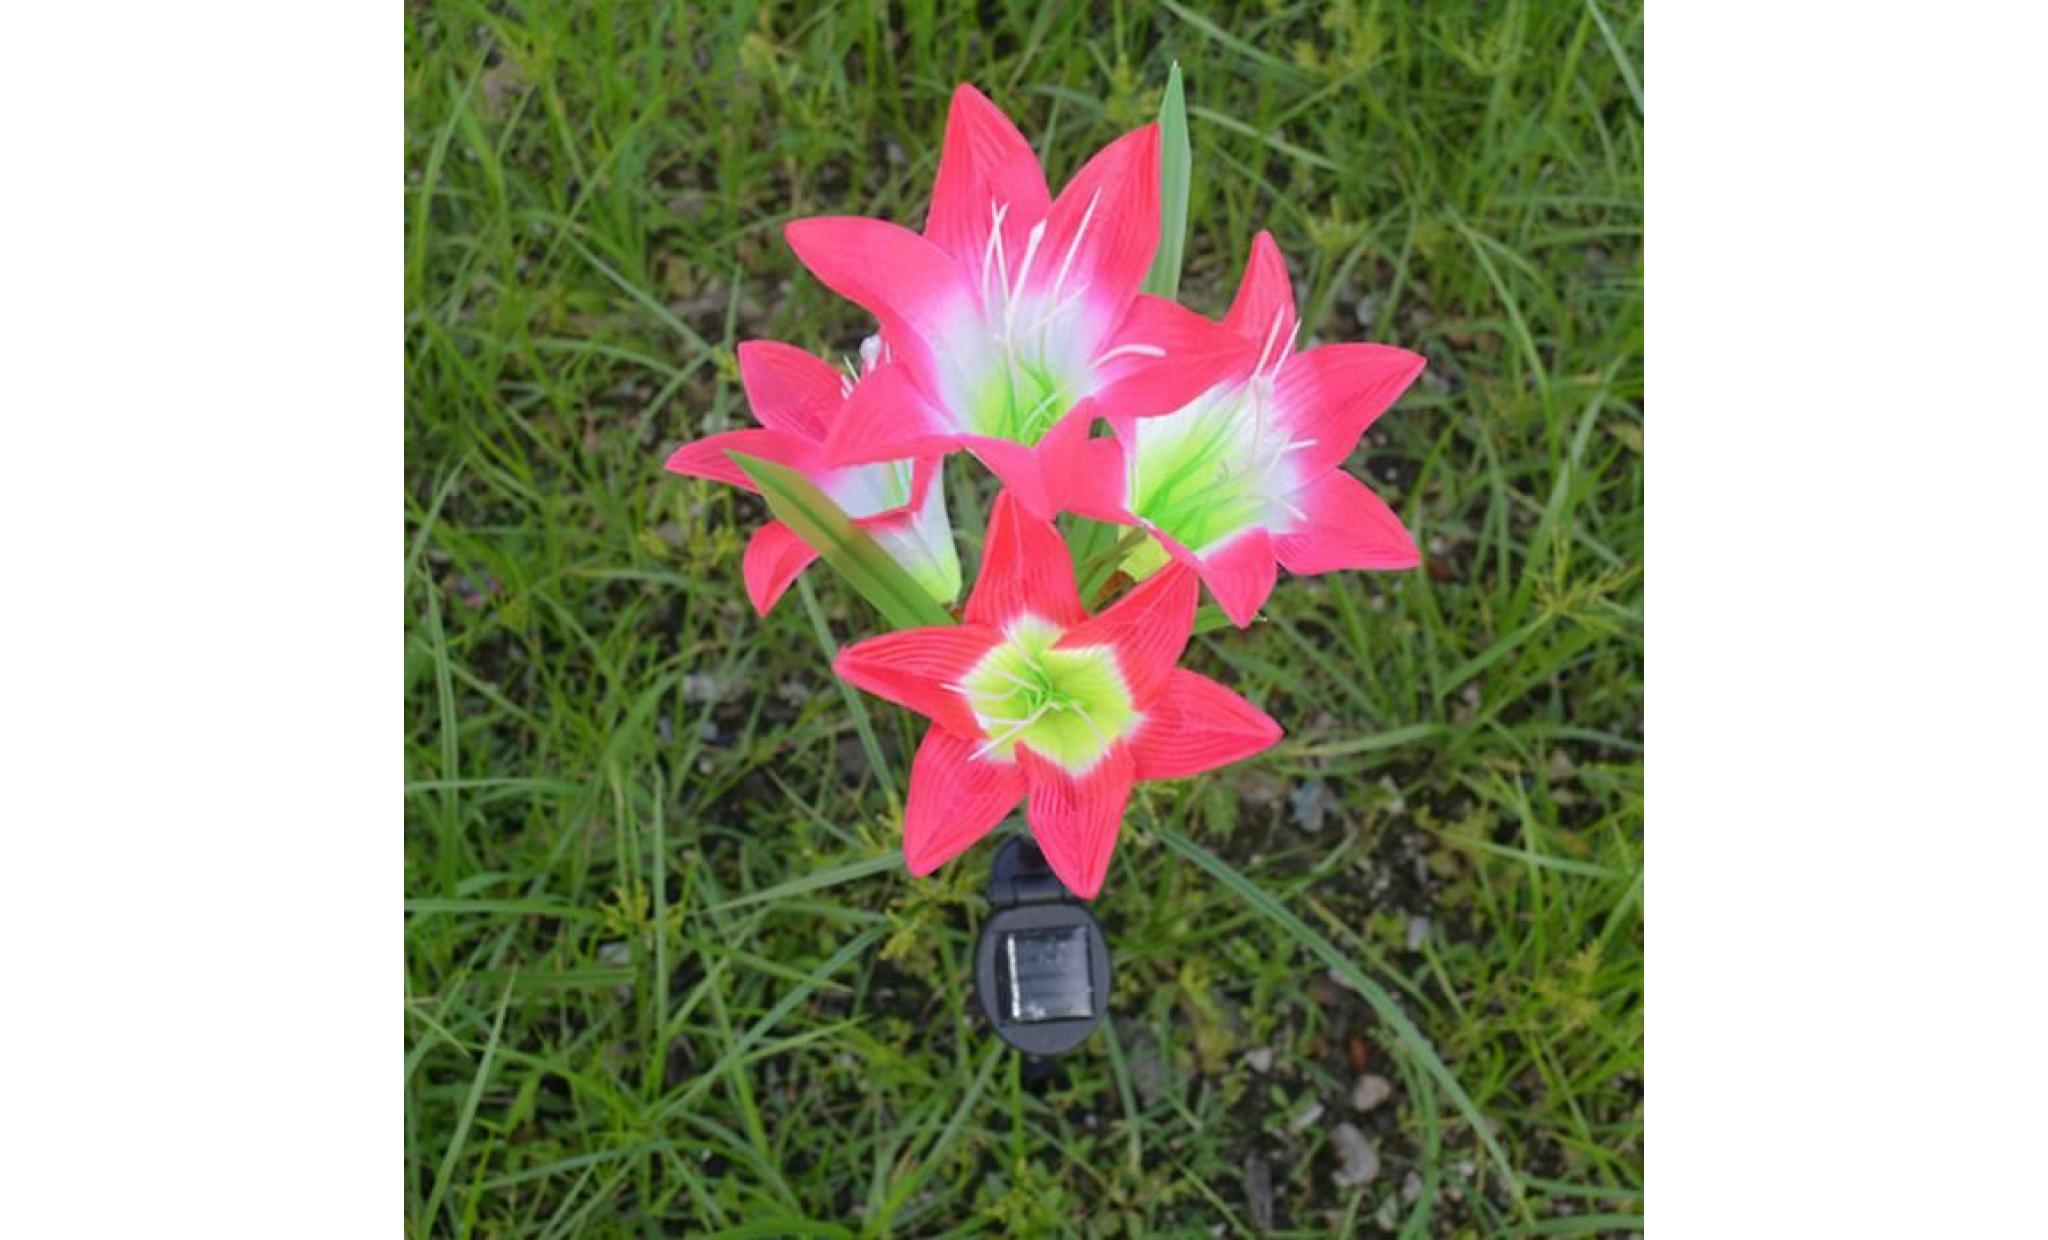 borne solaire 2 pcs fleur de lys jardin solaire actionné pieu lumières lumières fleurs artificielles led lumière #la 131 pas cher